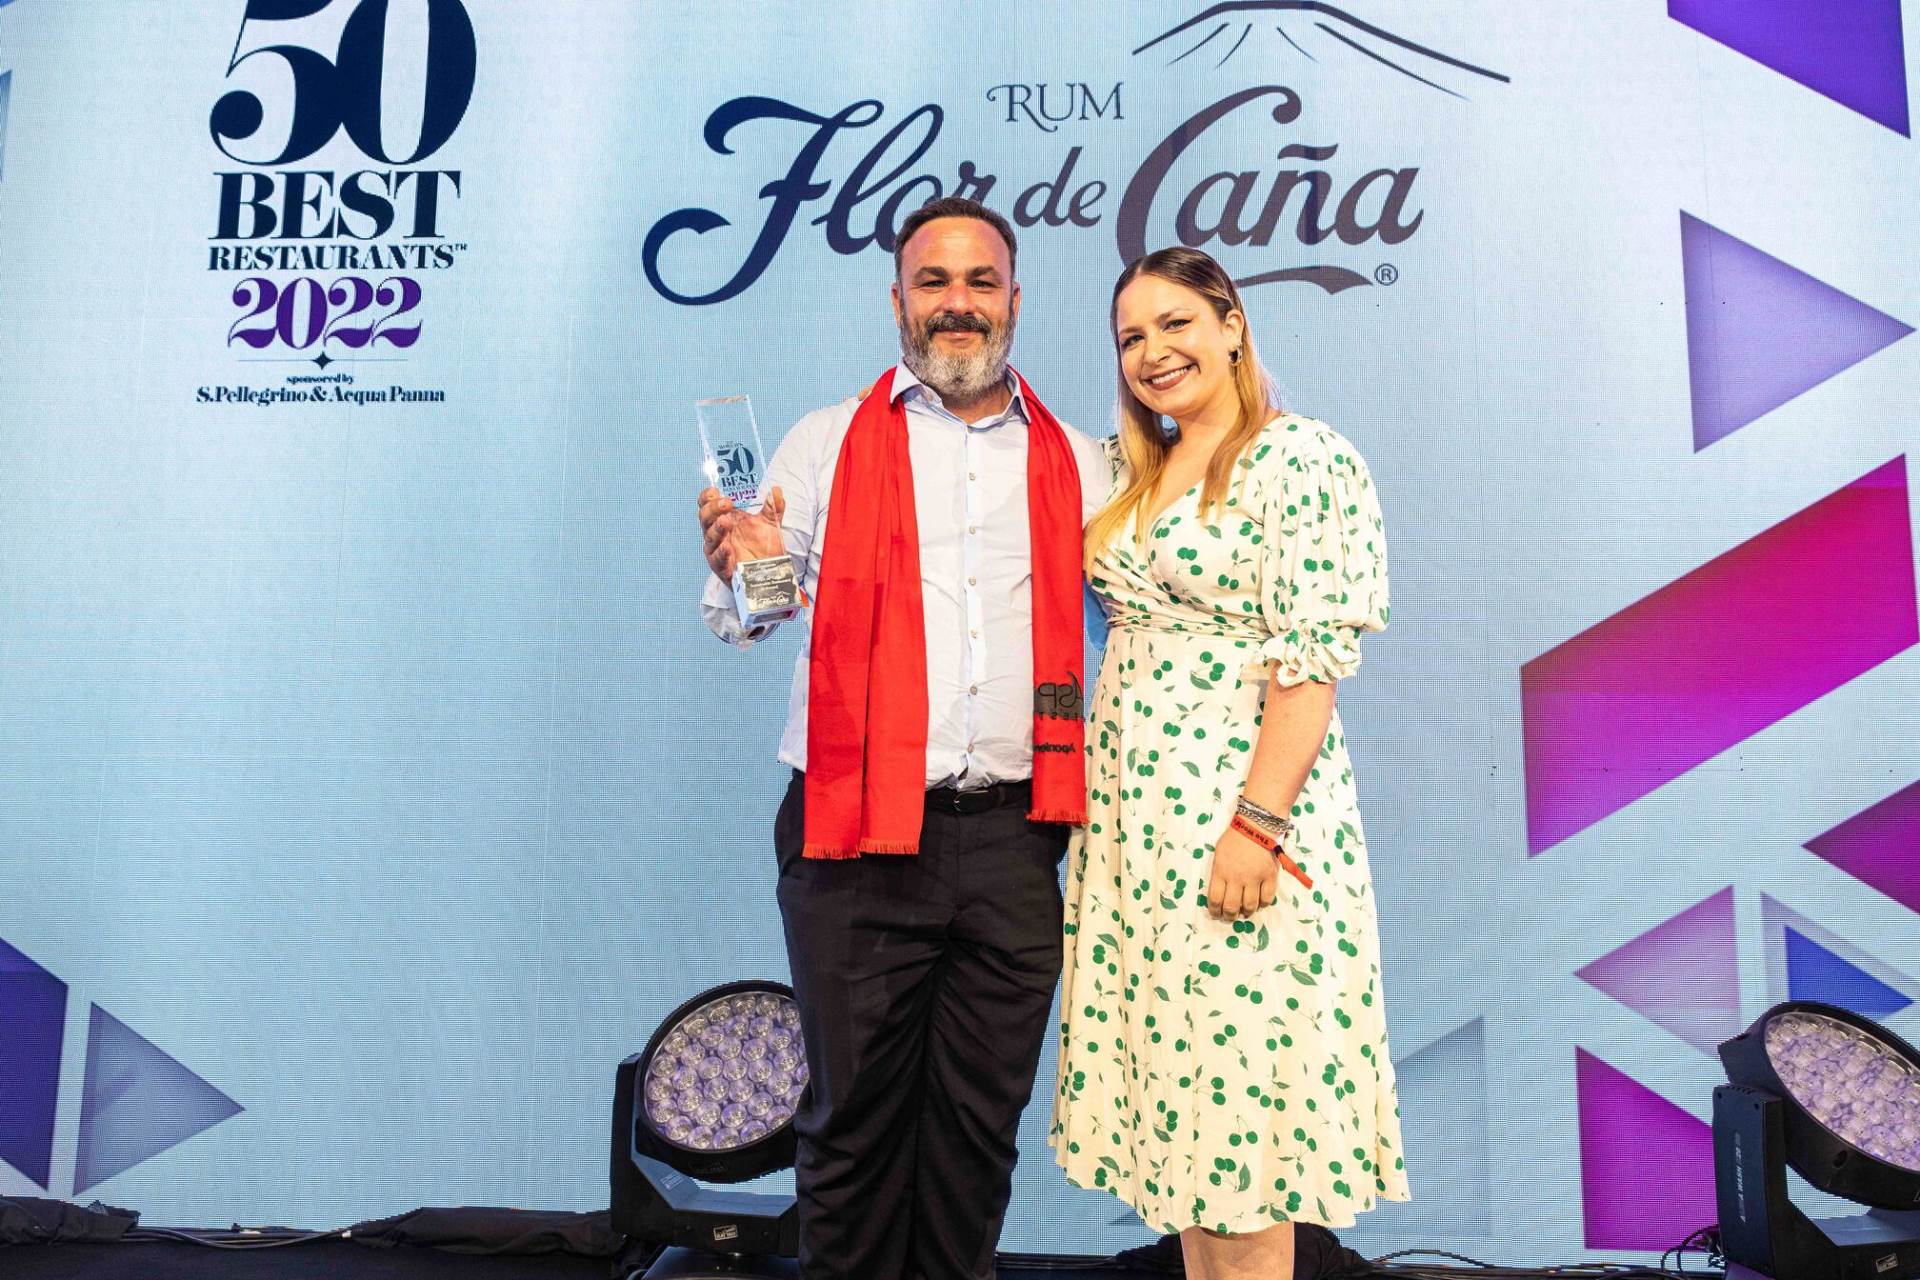 Angel Leon Flor de Cana Sustainable Restaurant Award 2022